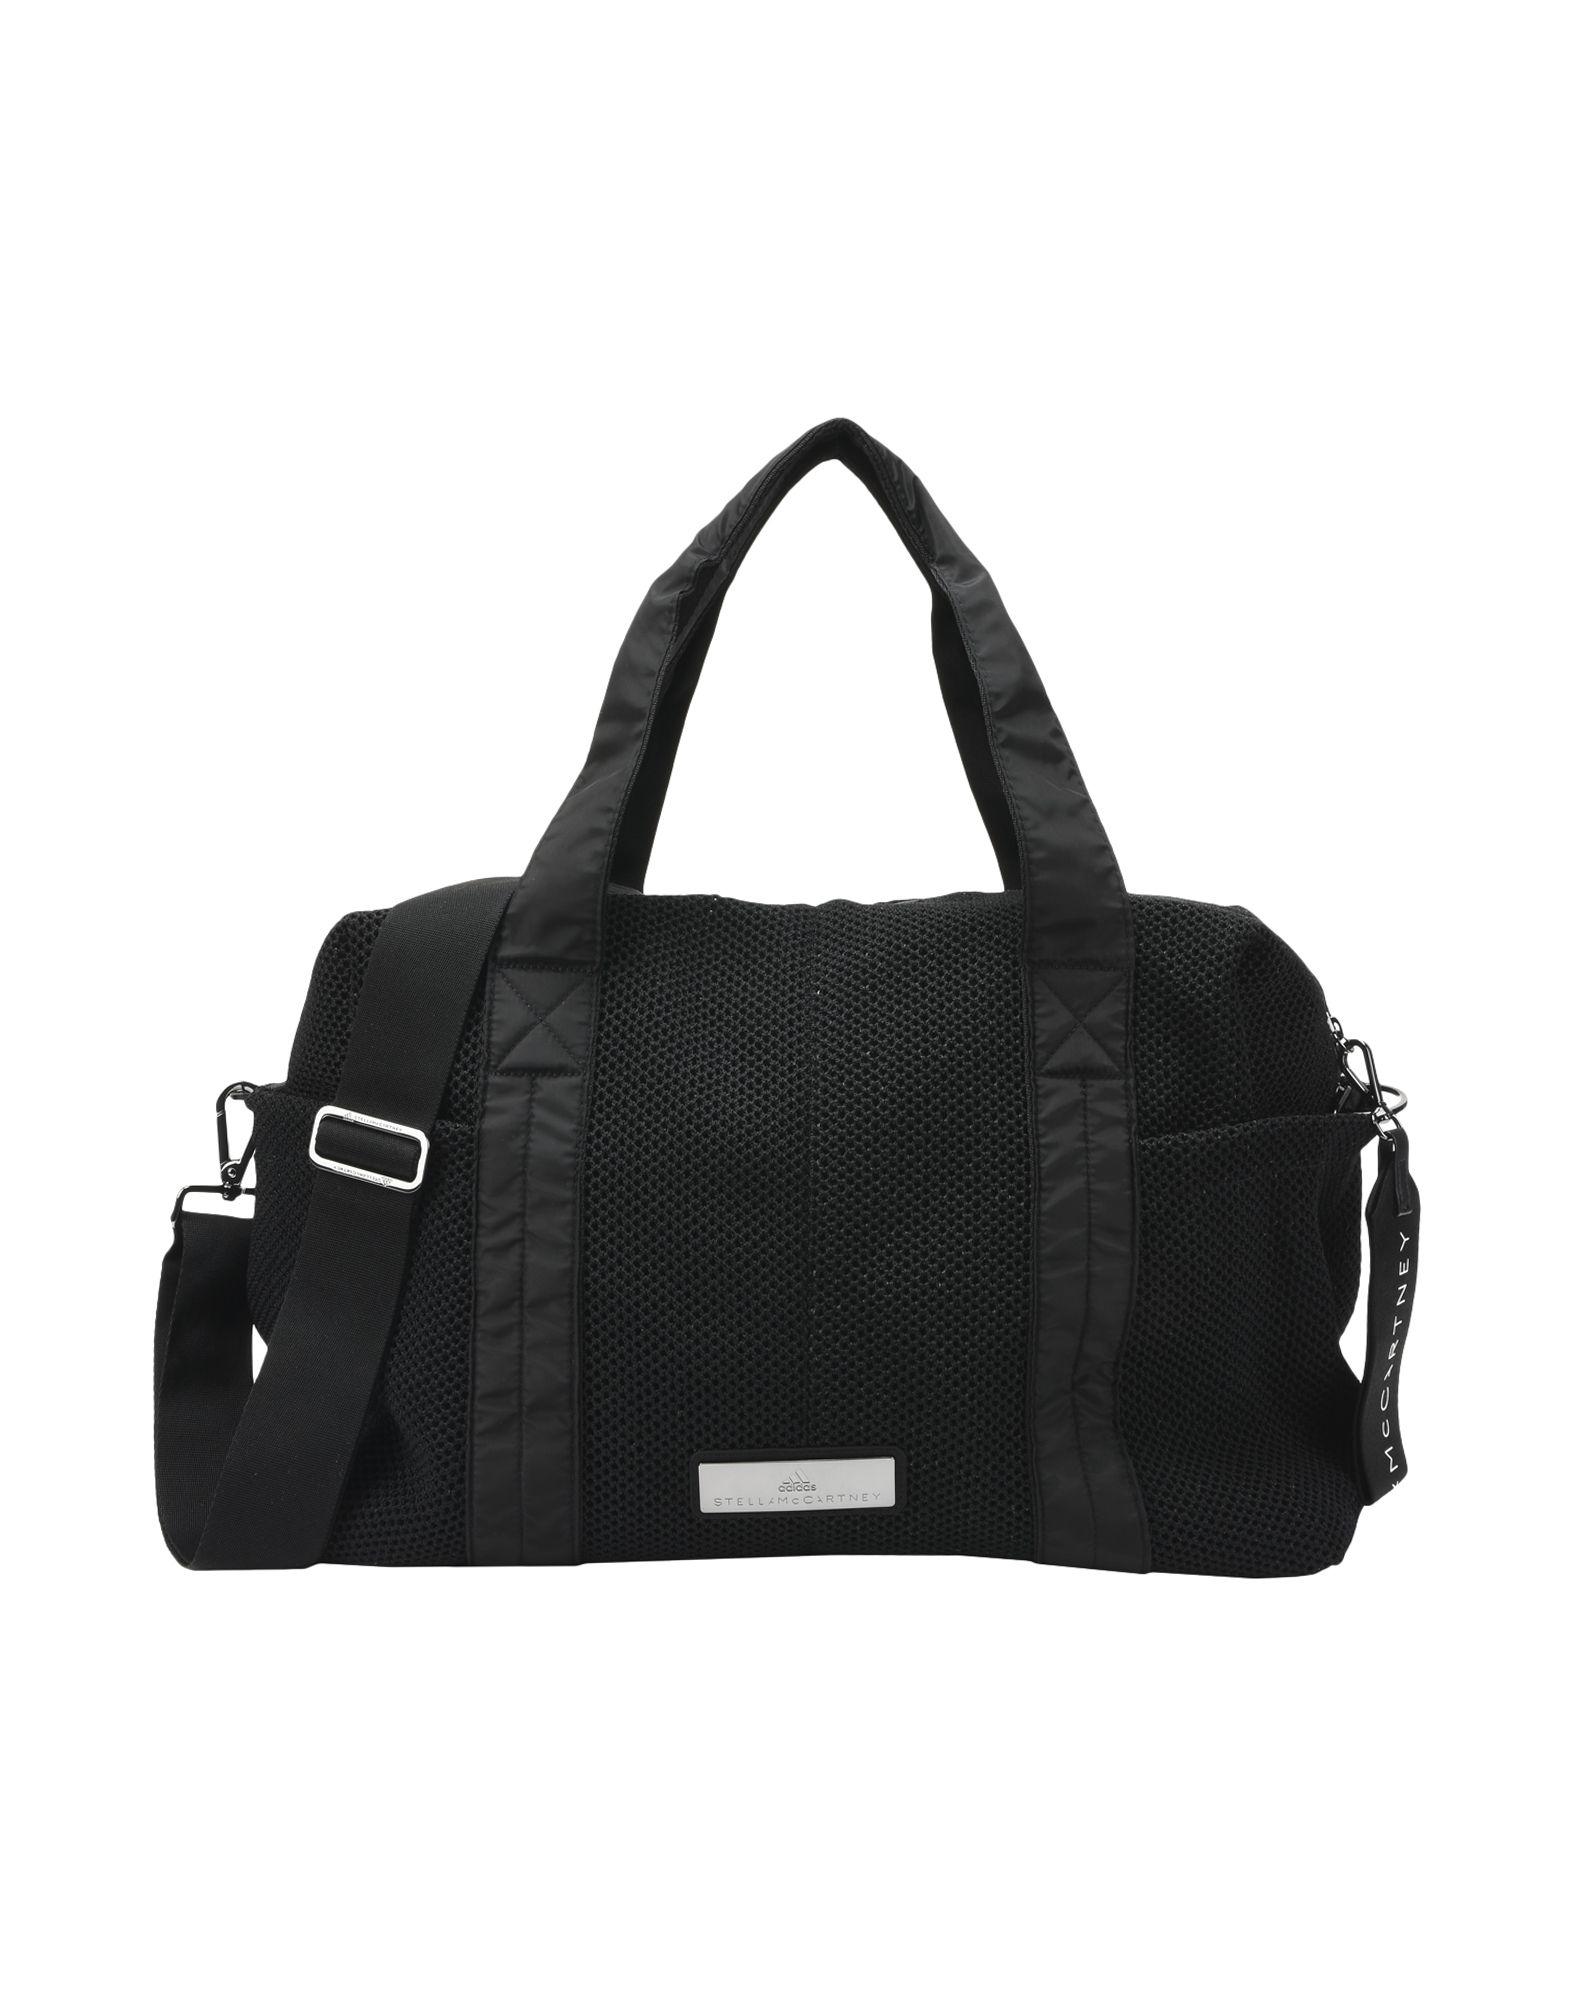 Adidas By Stella Mccartney Travel & Duffel Bags In Black | ModeSens